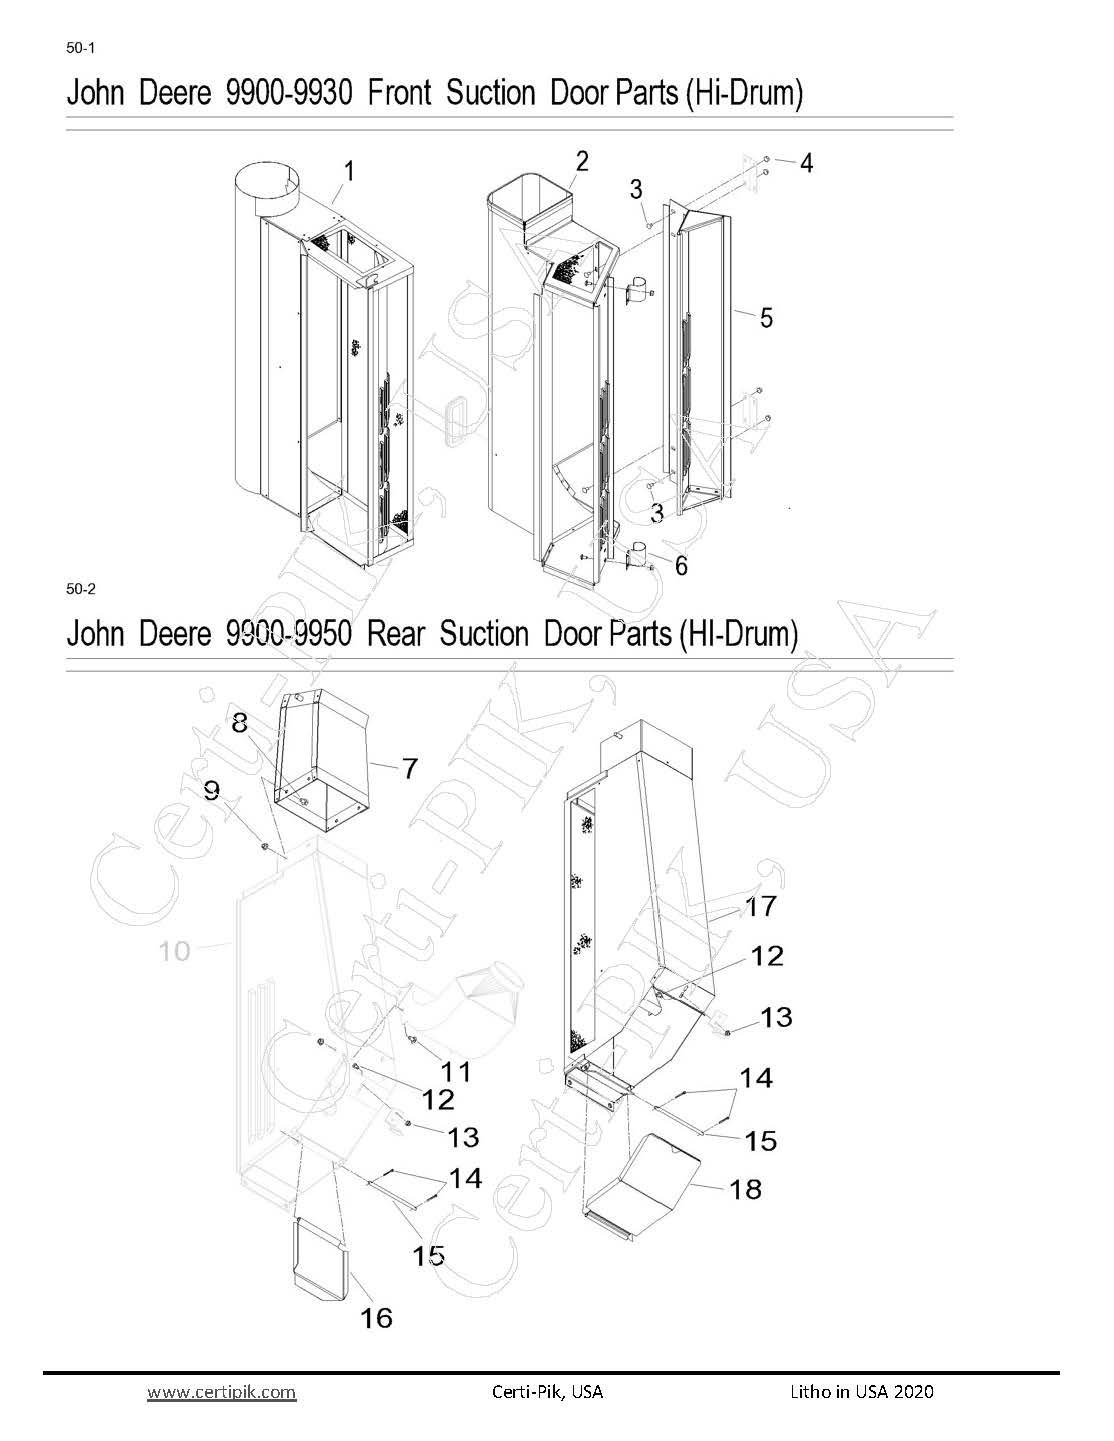 John Deere Front & Rear Suction Door Parts (Hi Drum)